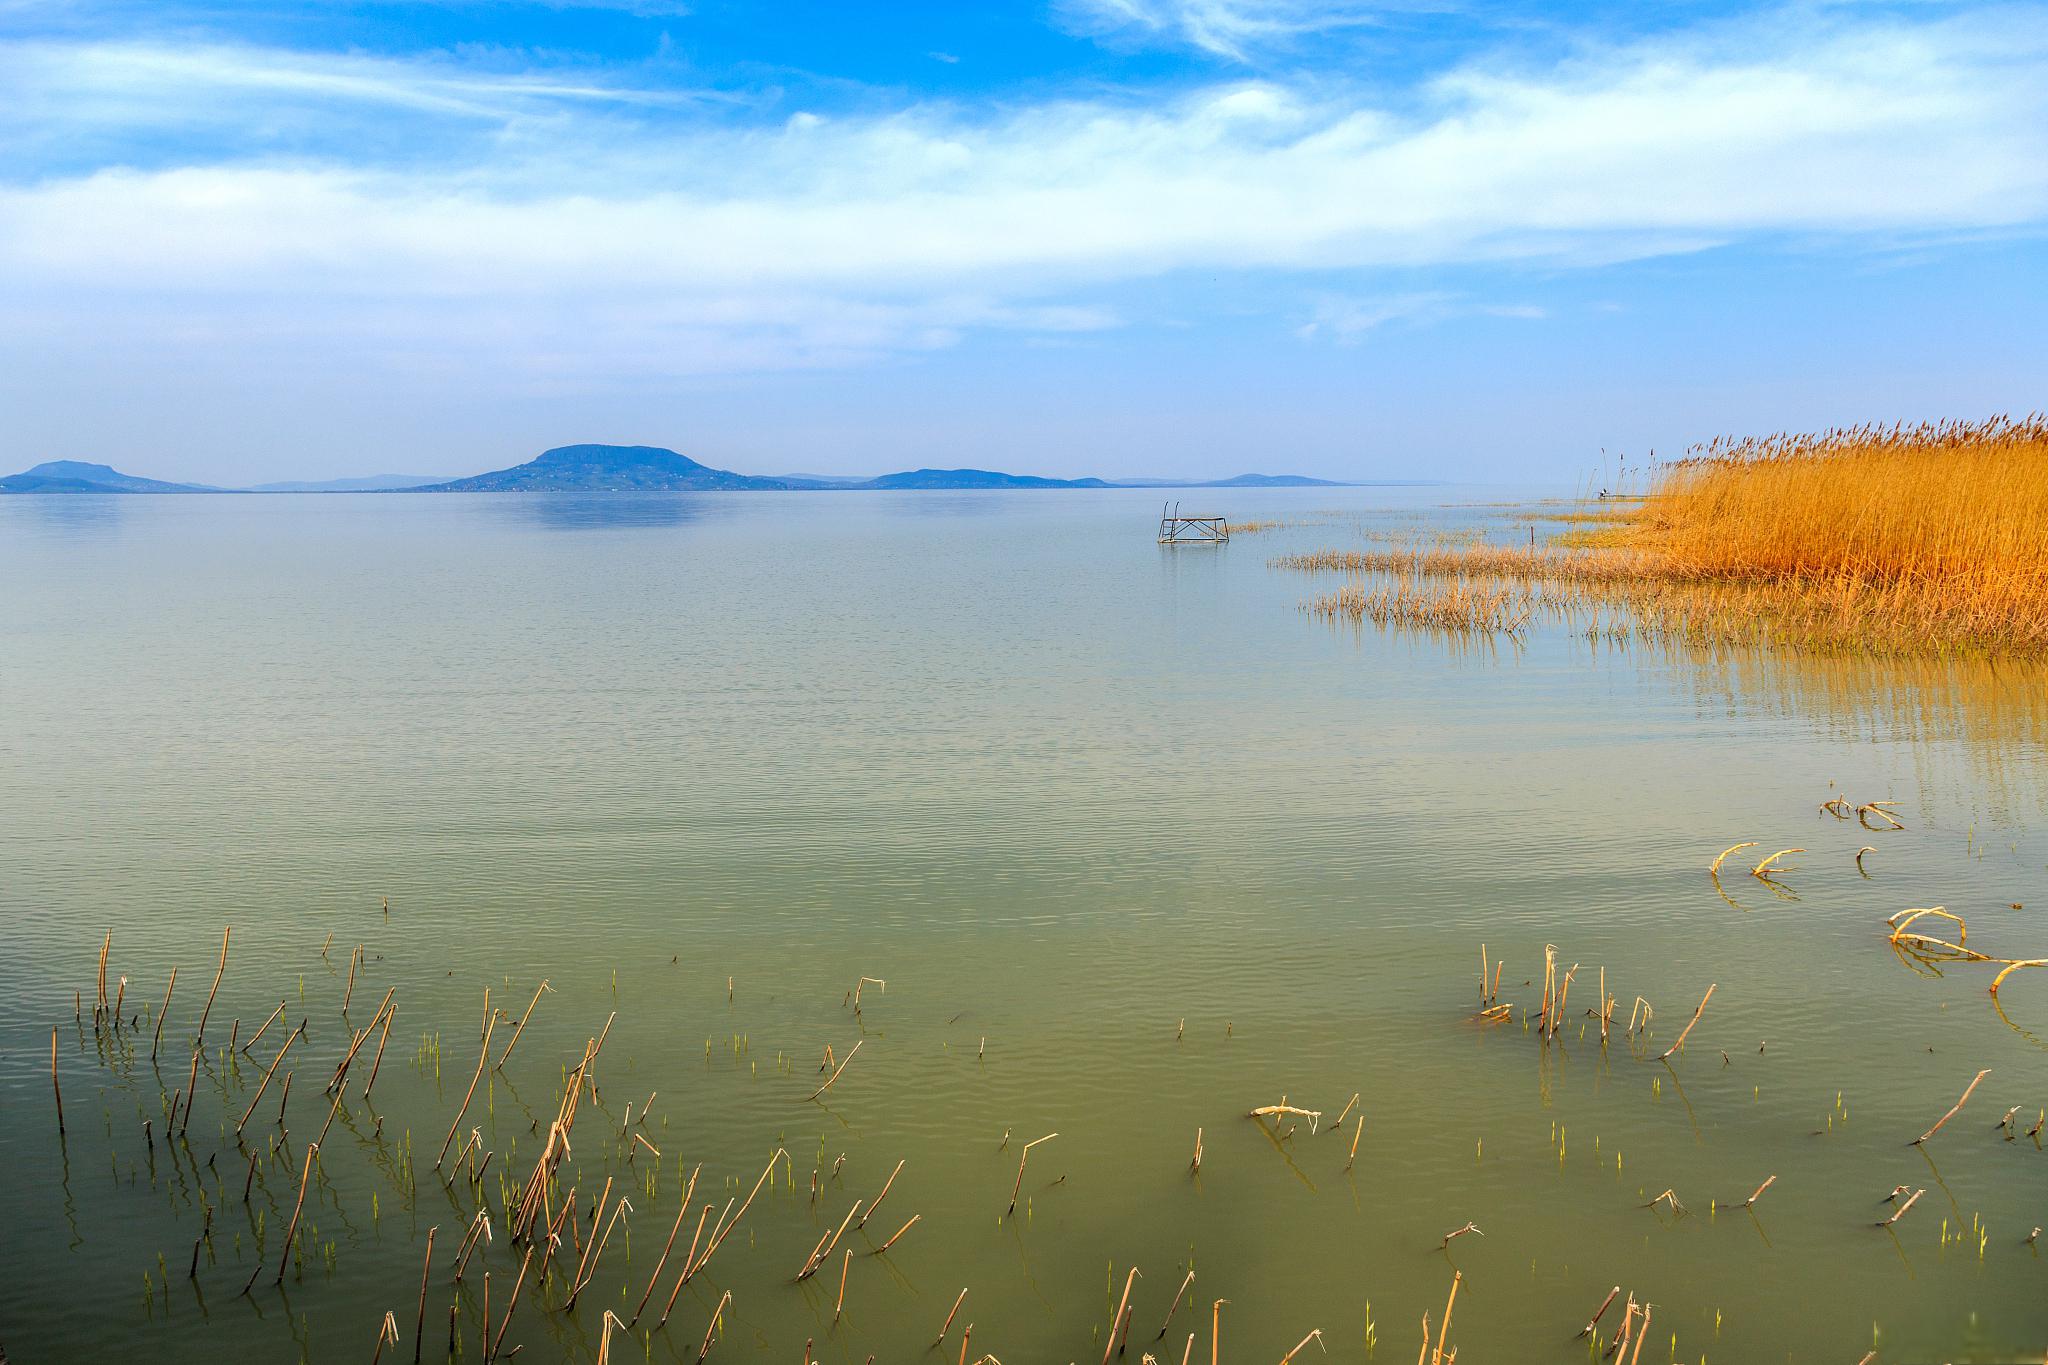 巢湖一日游推荐 巢湖,位于安徽省合肥市,是中国五大淡水湖之一,拥有得